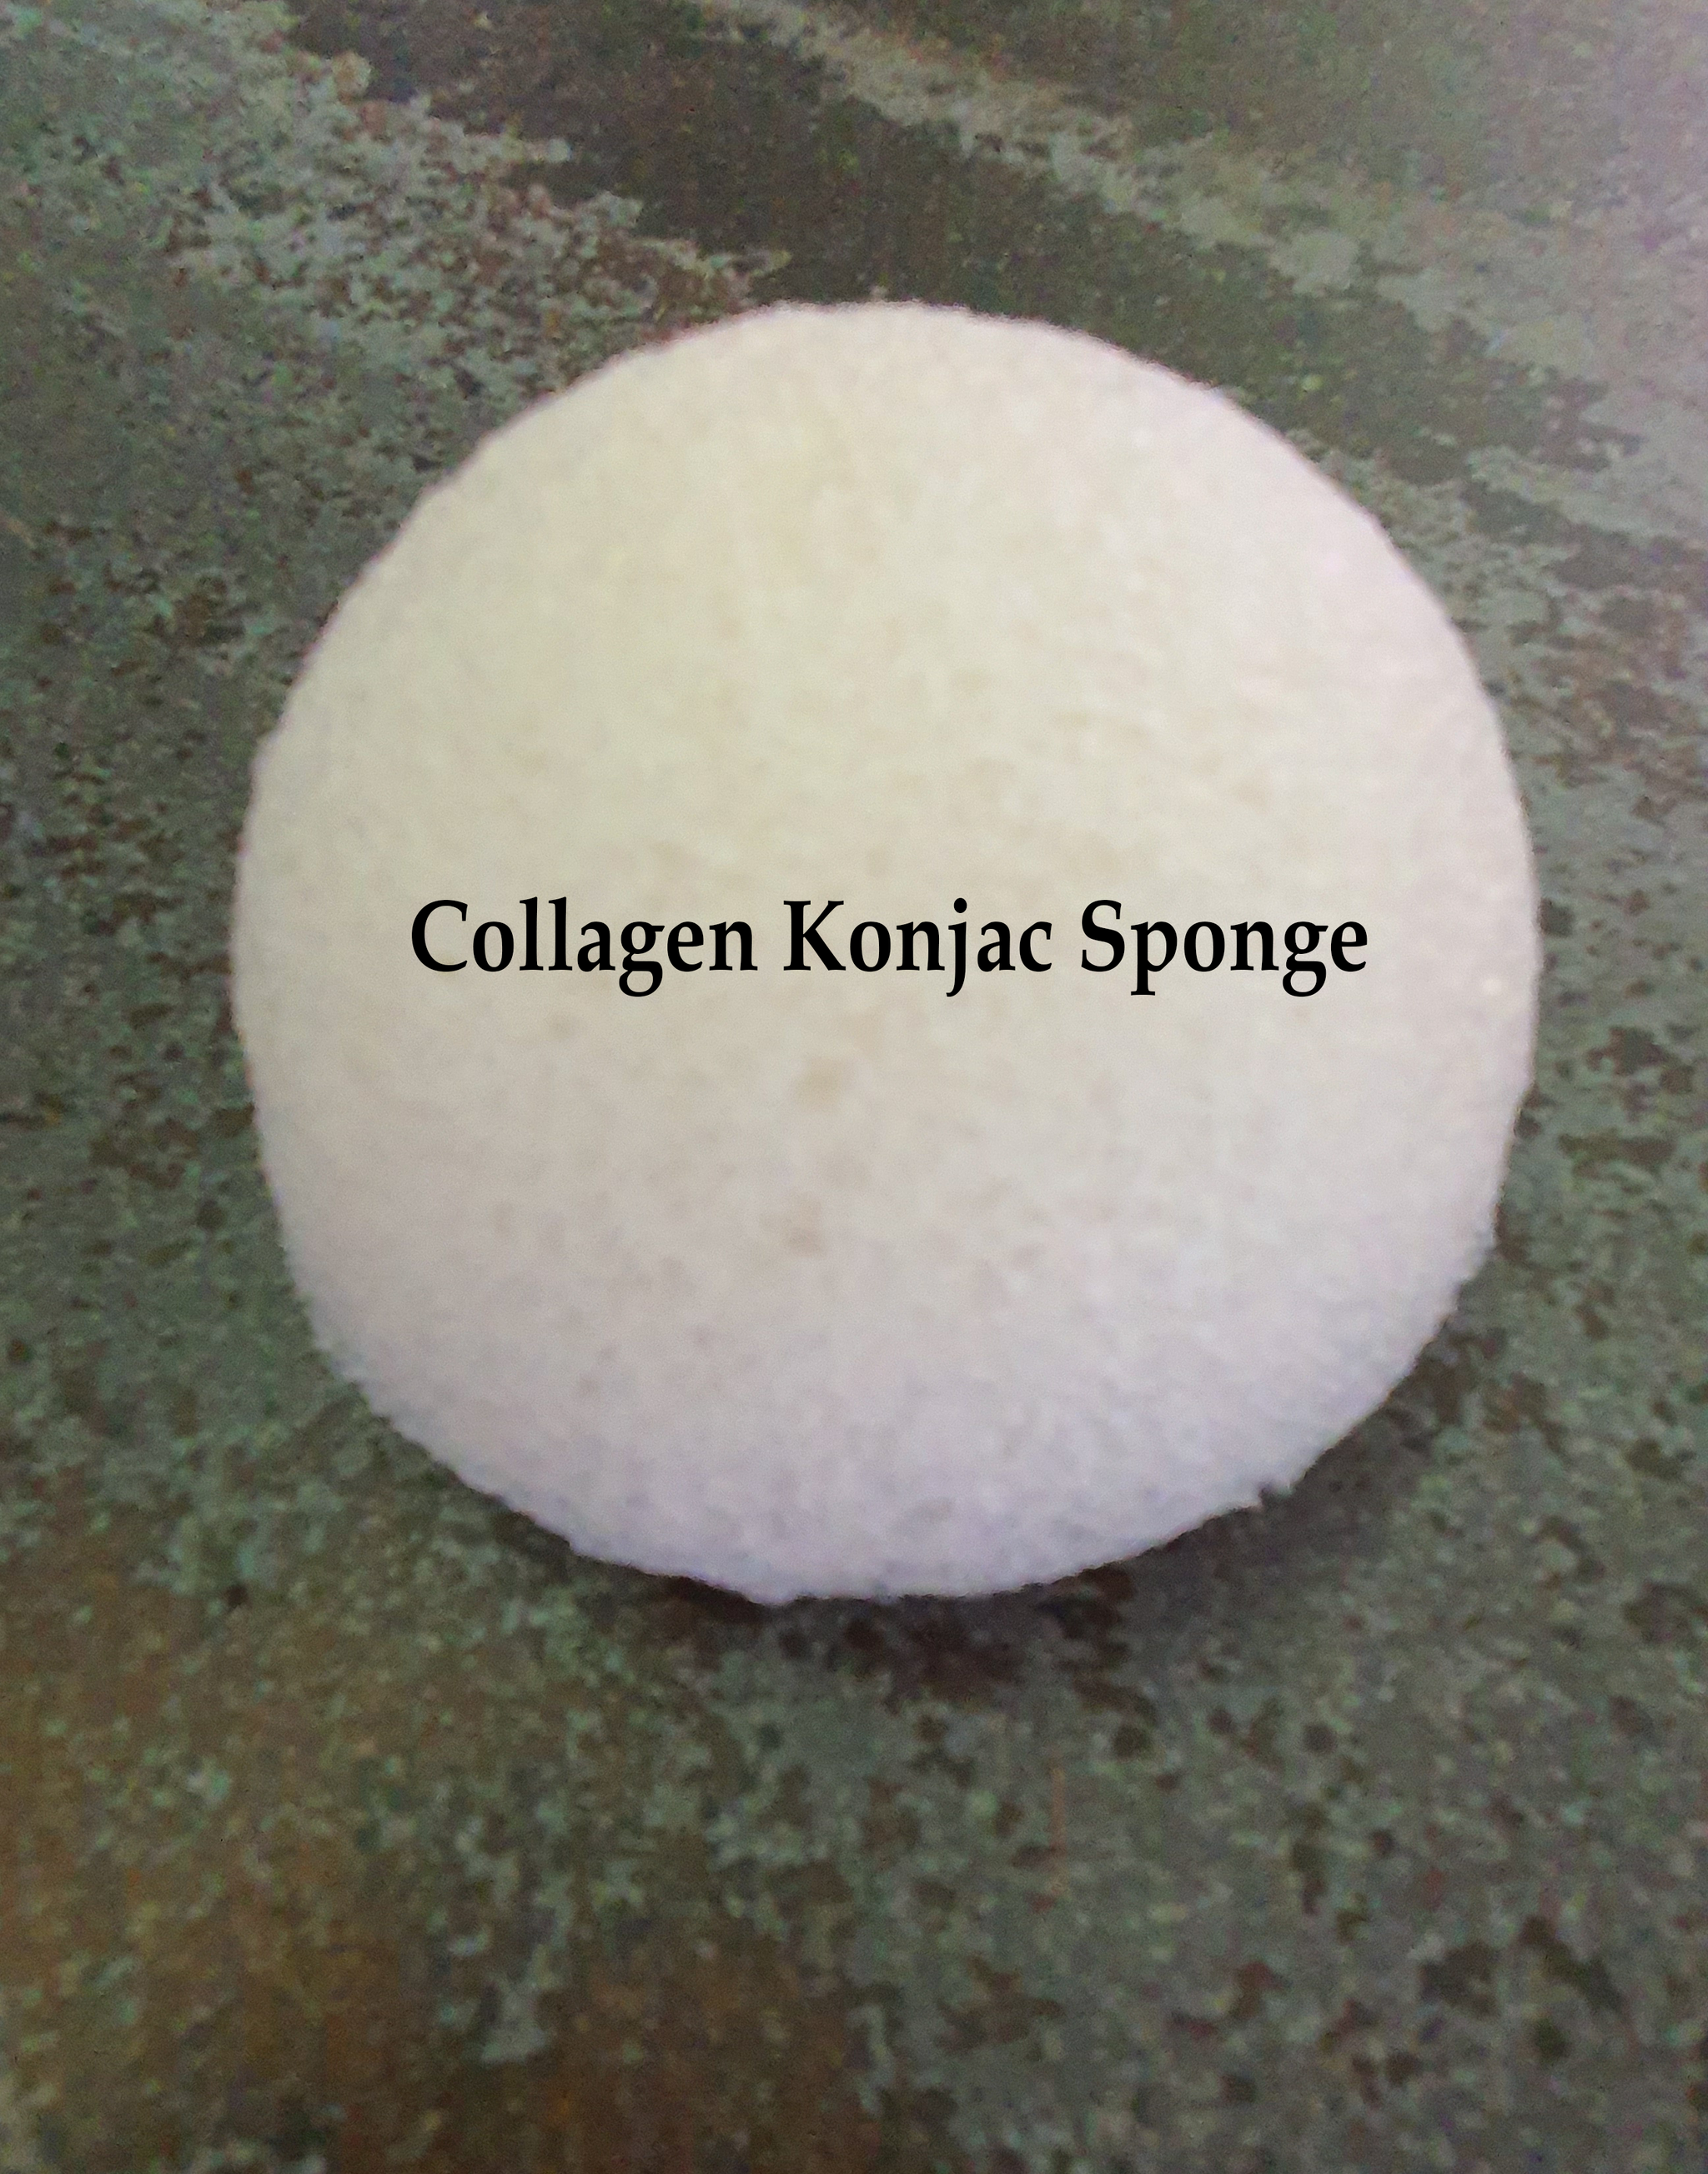 Collagen Konjac Sponge